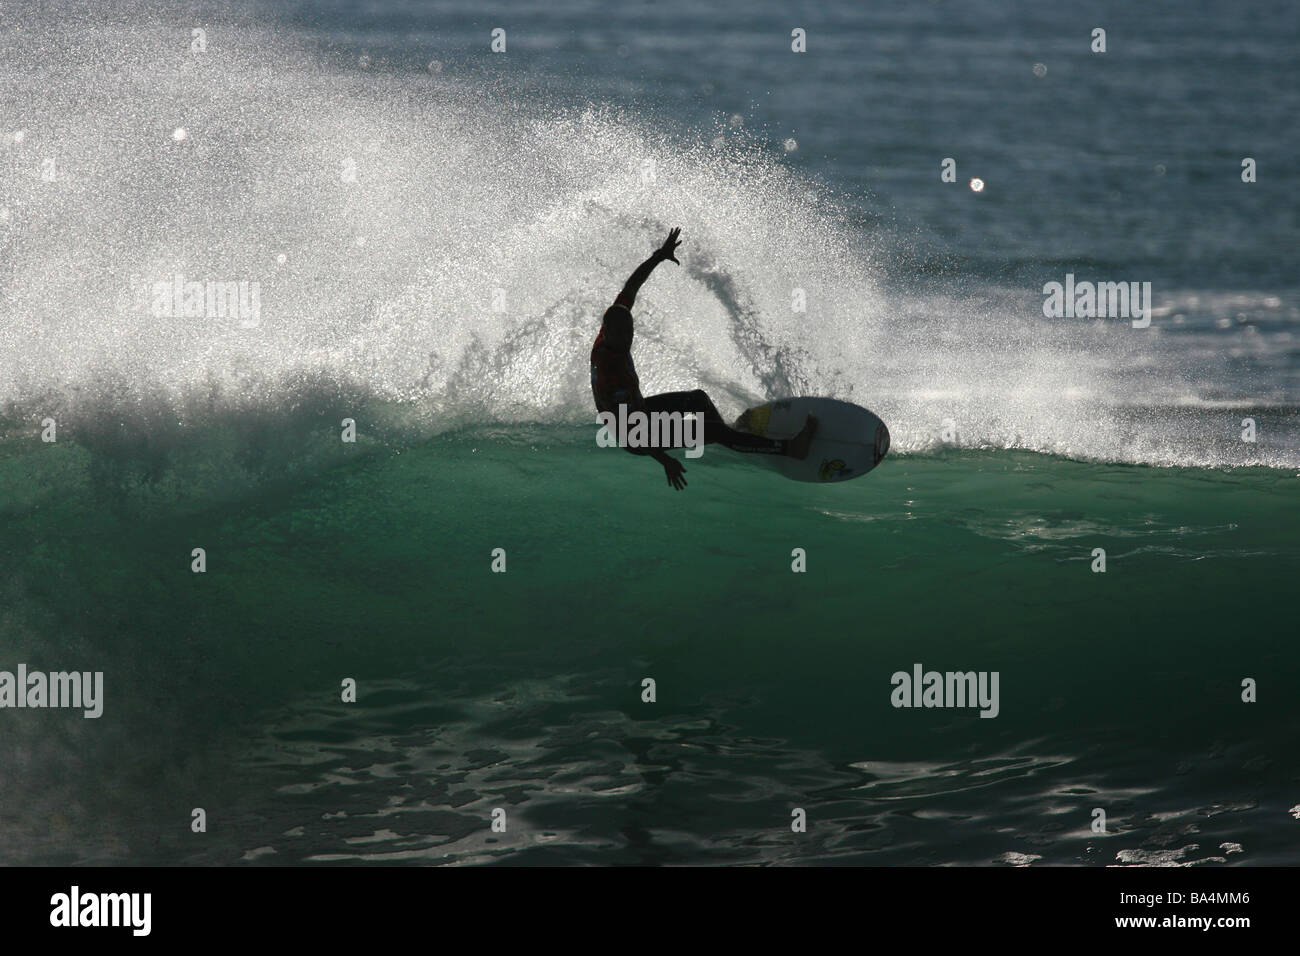 Silueta de un surfista cabalgando una ola. Foto de stock